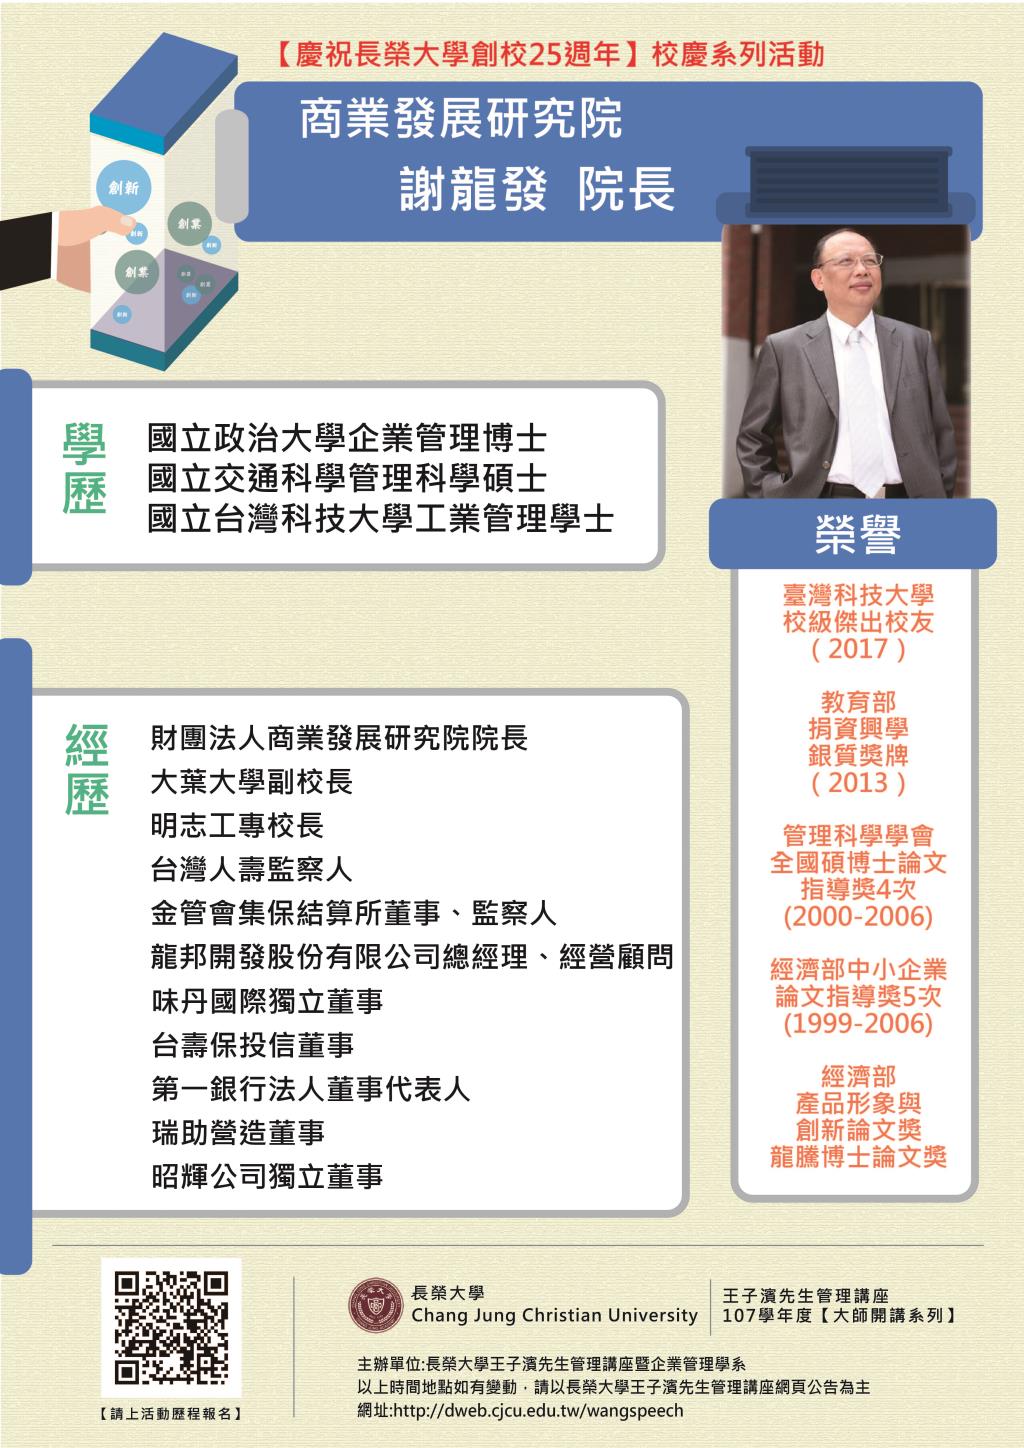 敬邀參加週五下午(11/23)王子濱先生管理講座---商業發展研究院     謝龍發院長